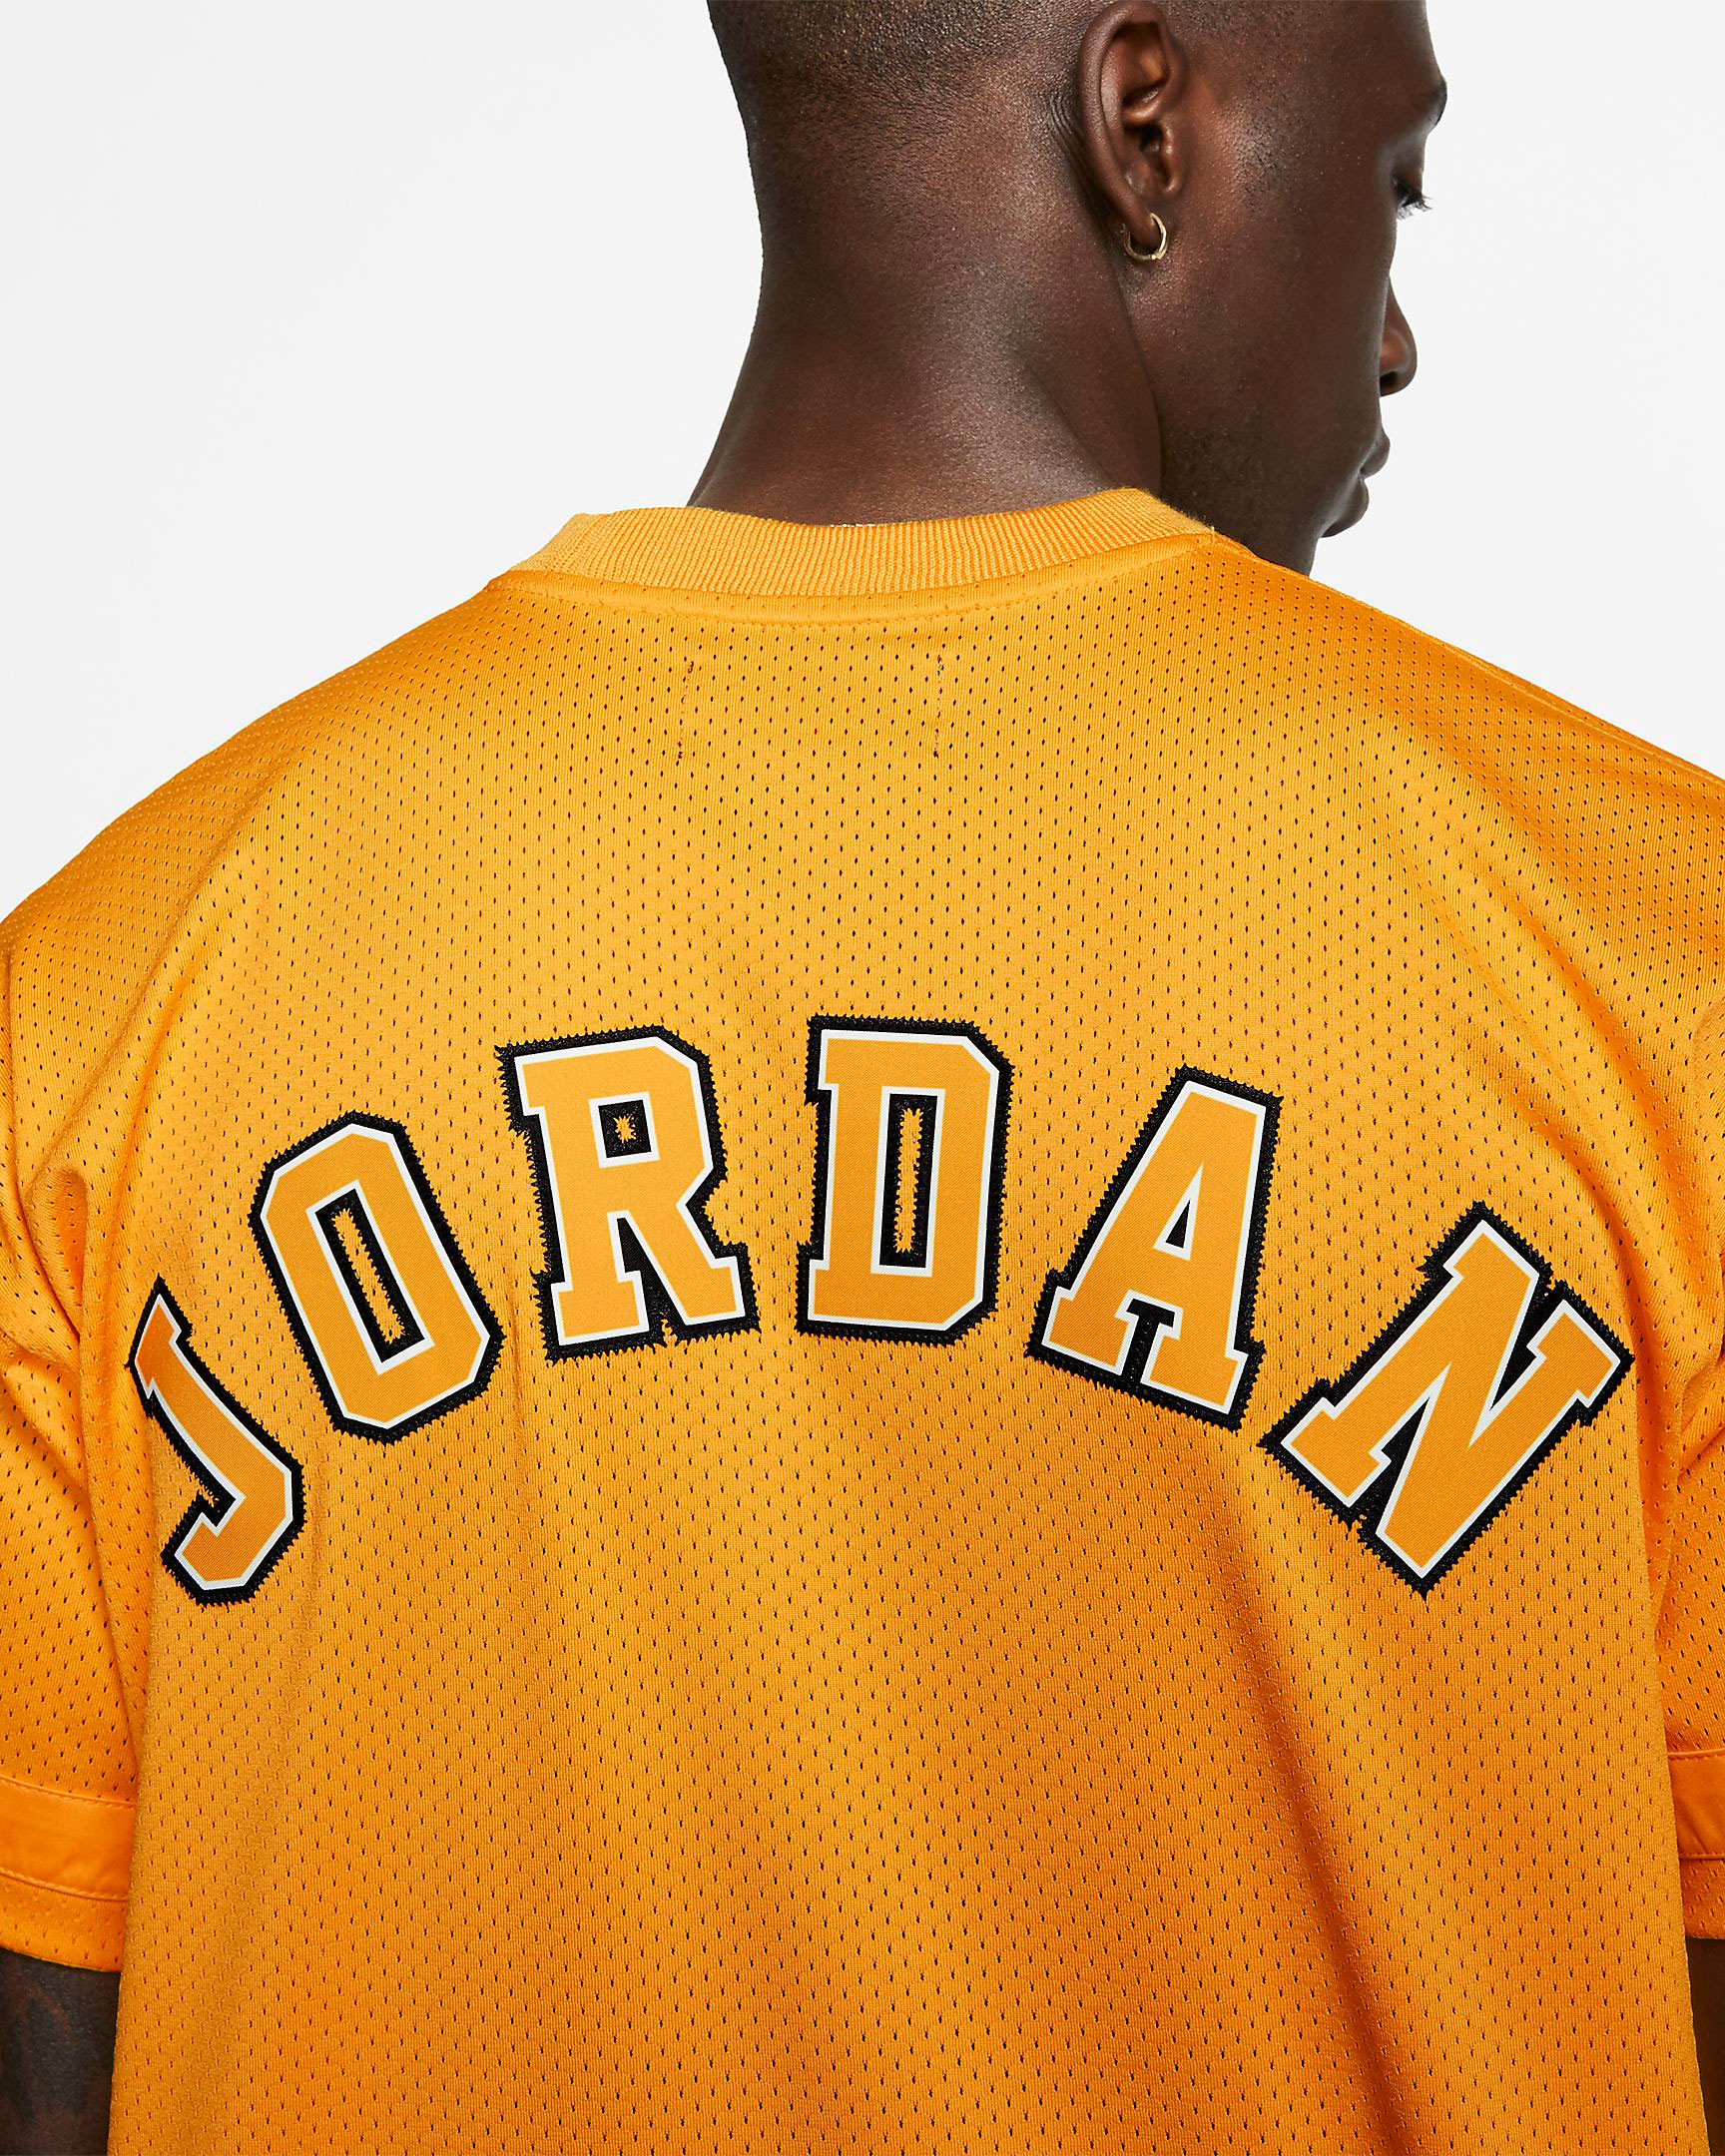 jordan-14-yellow-ferrari-jersey-shirt-match-4